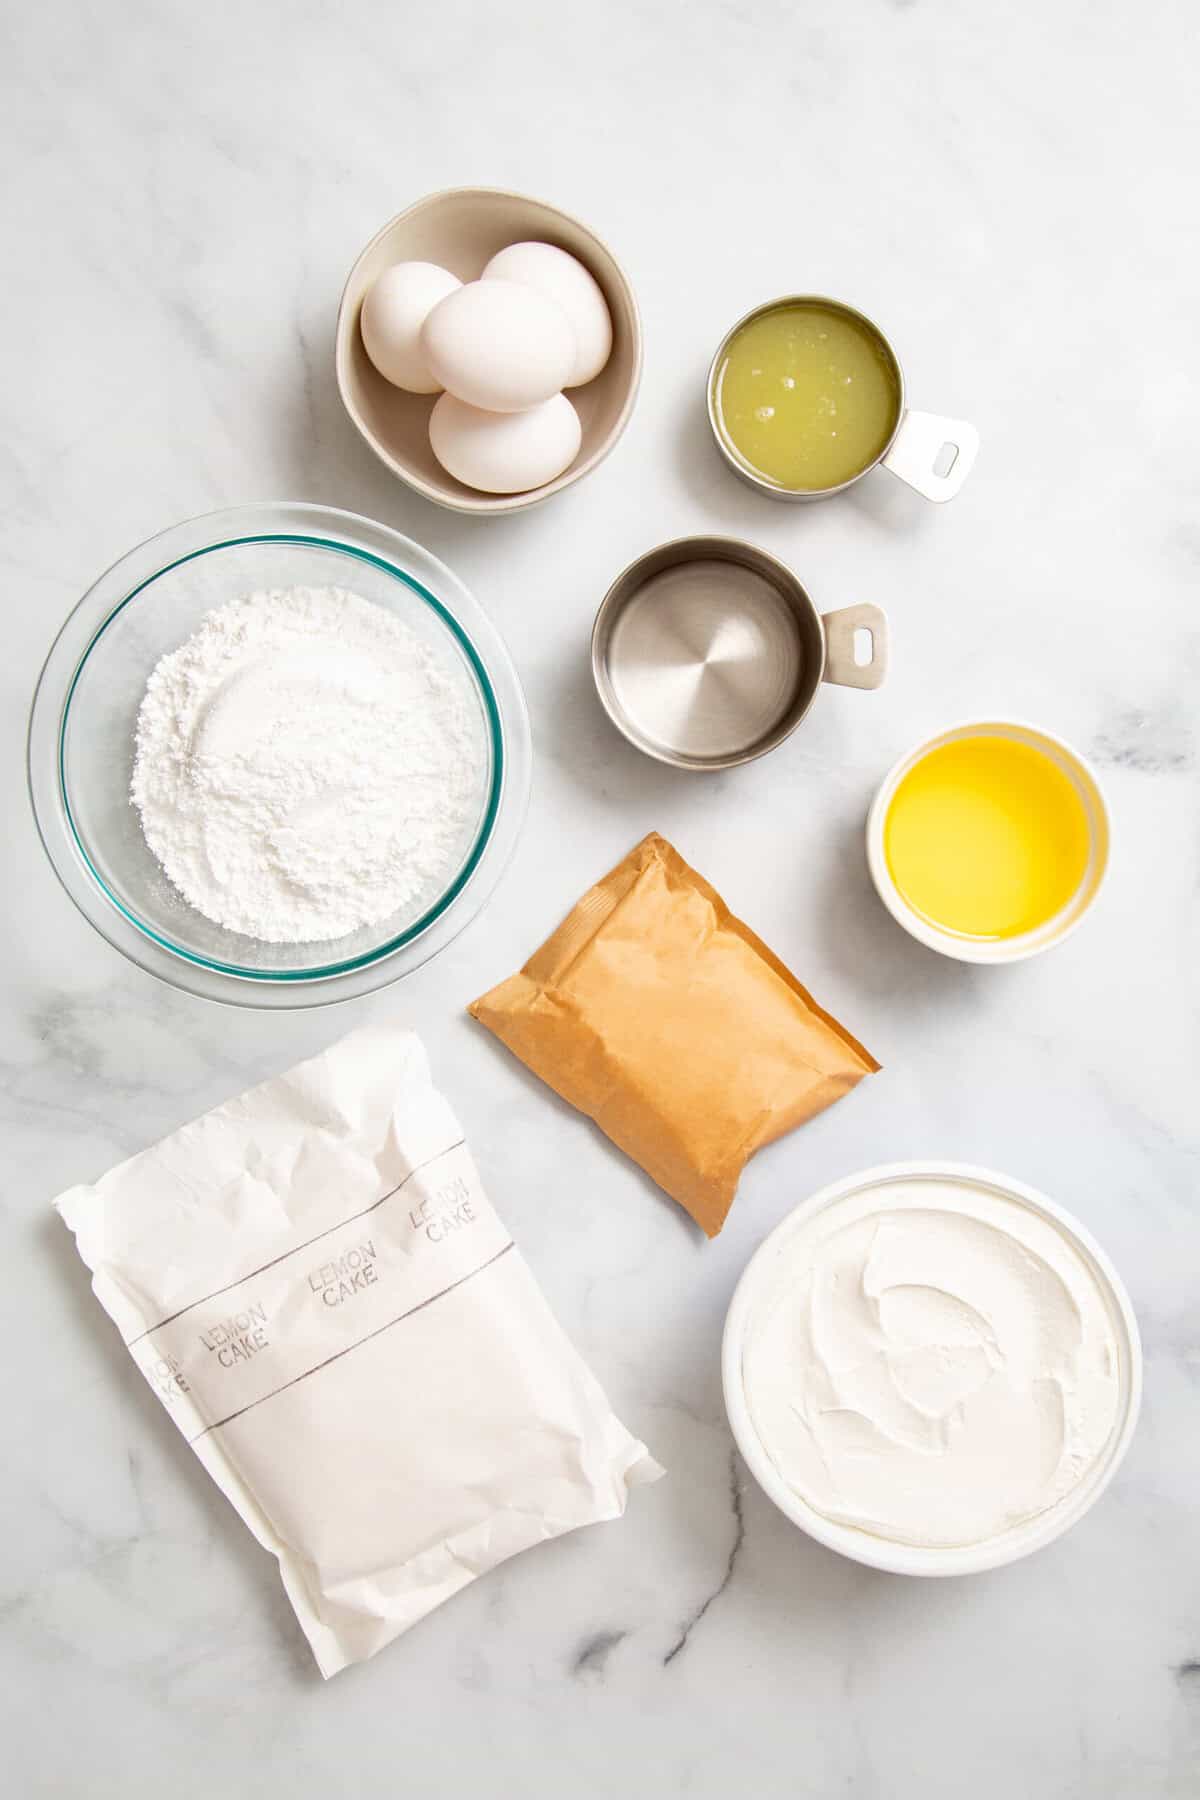 Ingredients to make lemon poke cake.